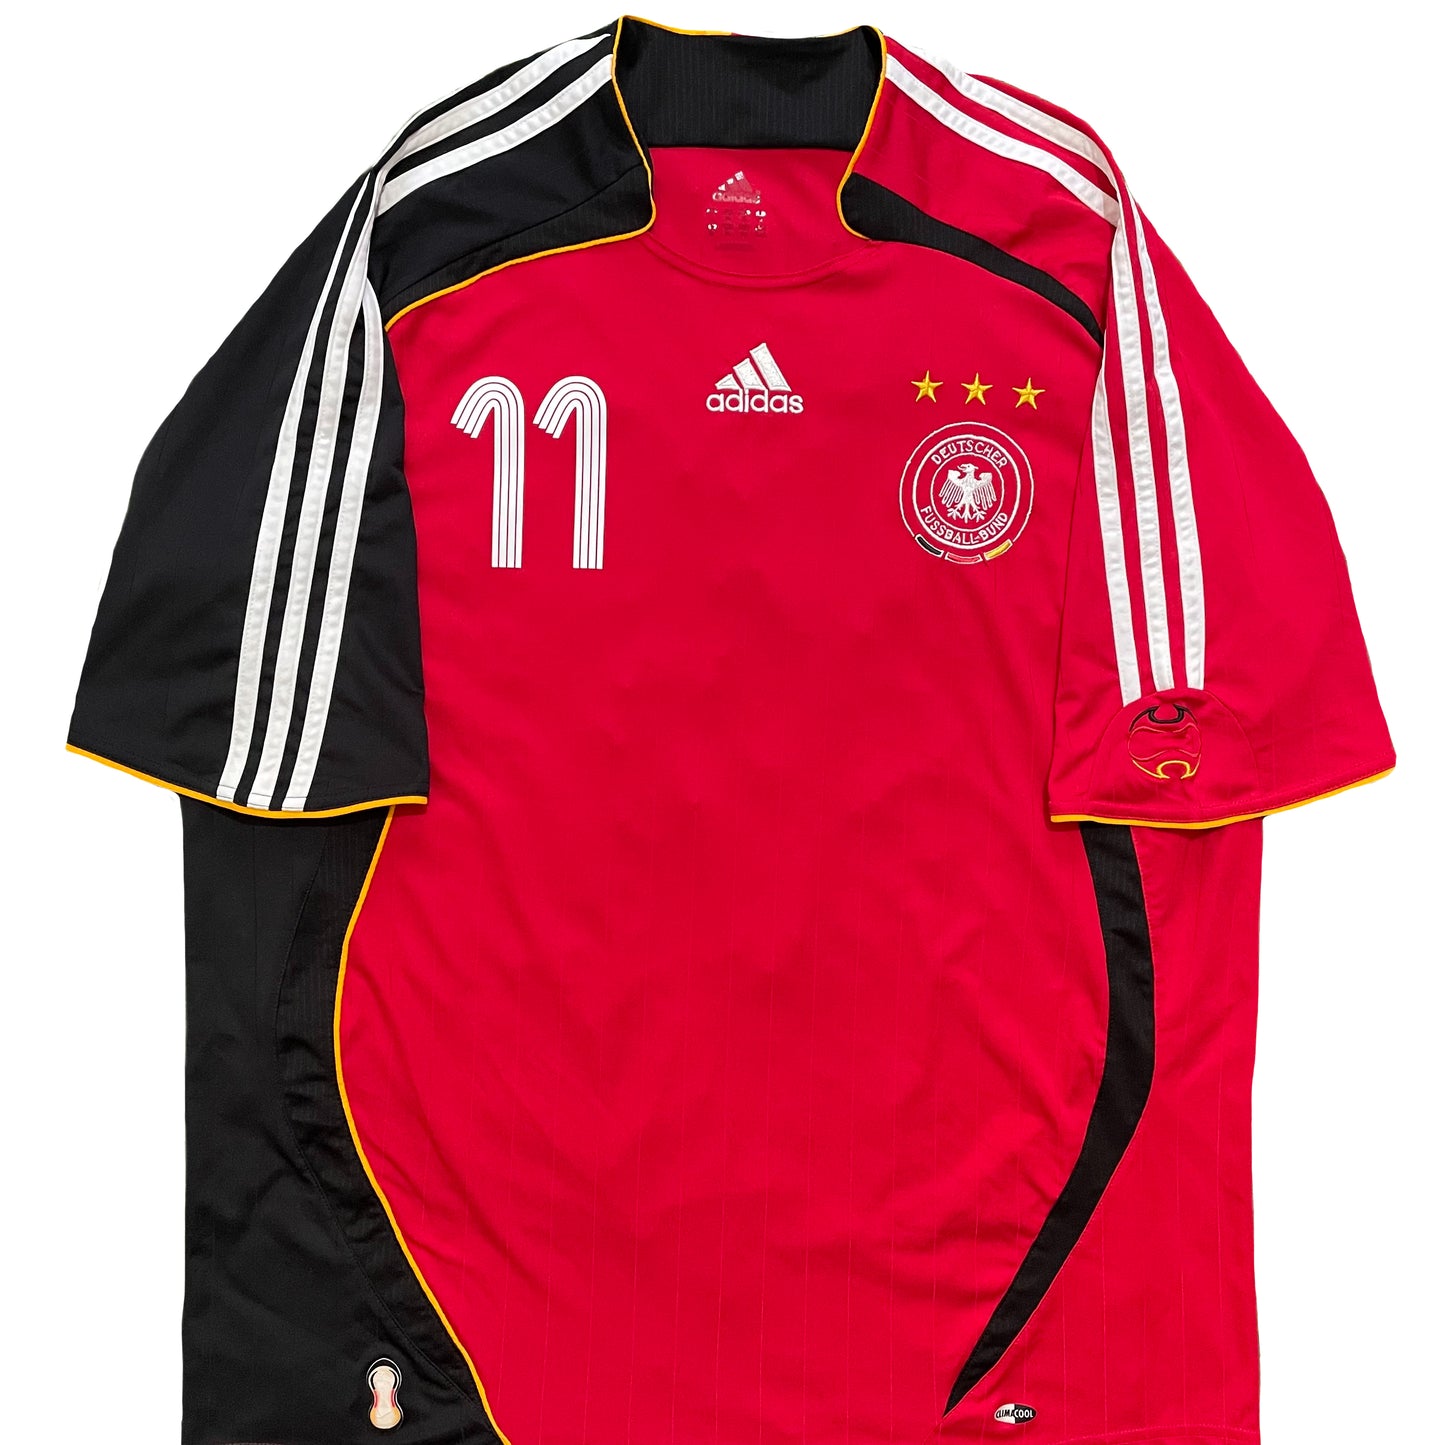 <tc>2006 Mundial Alemania camiseta visitante #11 Klose (XL)</tc>